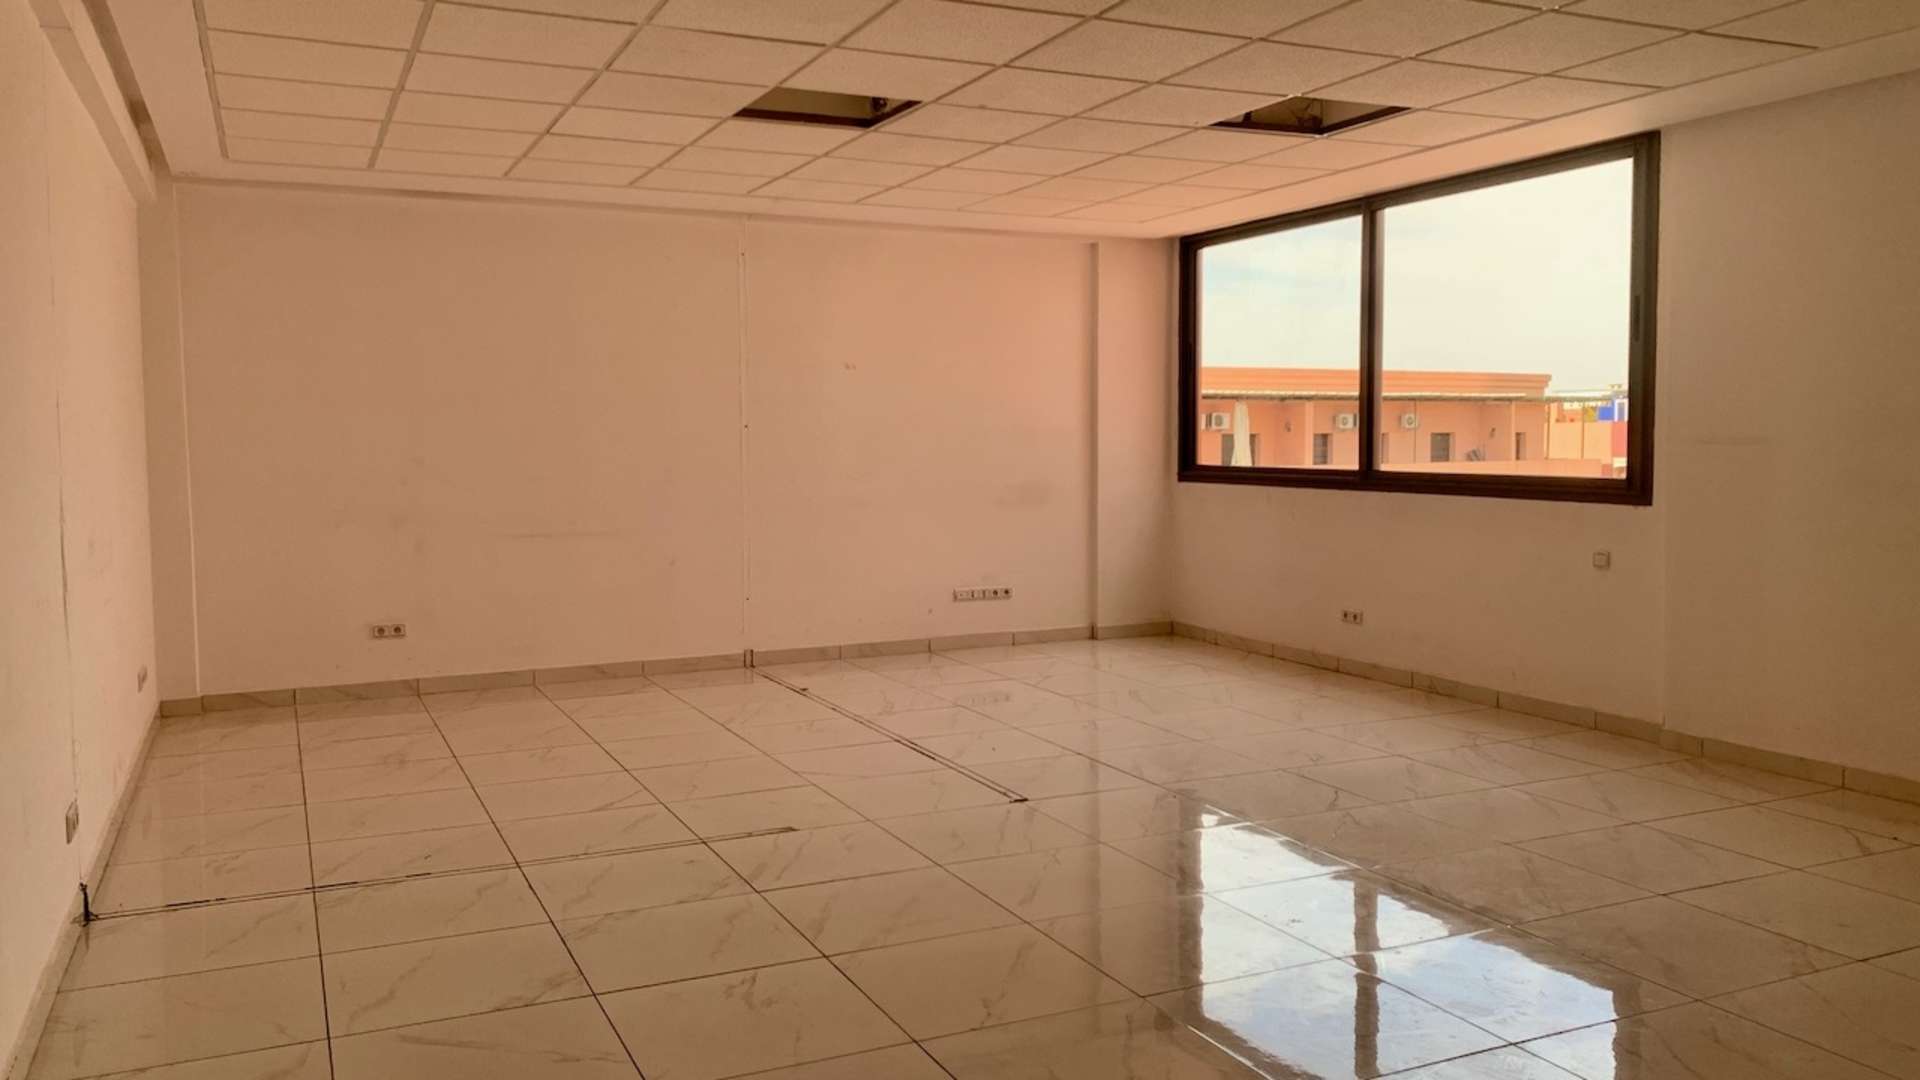 Location longue durée ,Bureaux & Commerces,Plateau de bureau bien placé à Guéliz Av. Abdelkrim el Khattabi à Marrakech,Marrakech,Guéliz